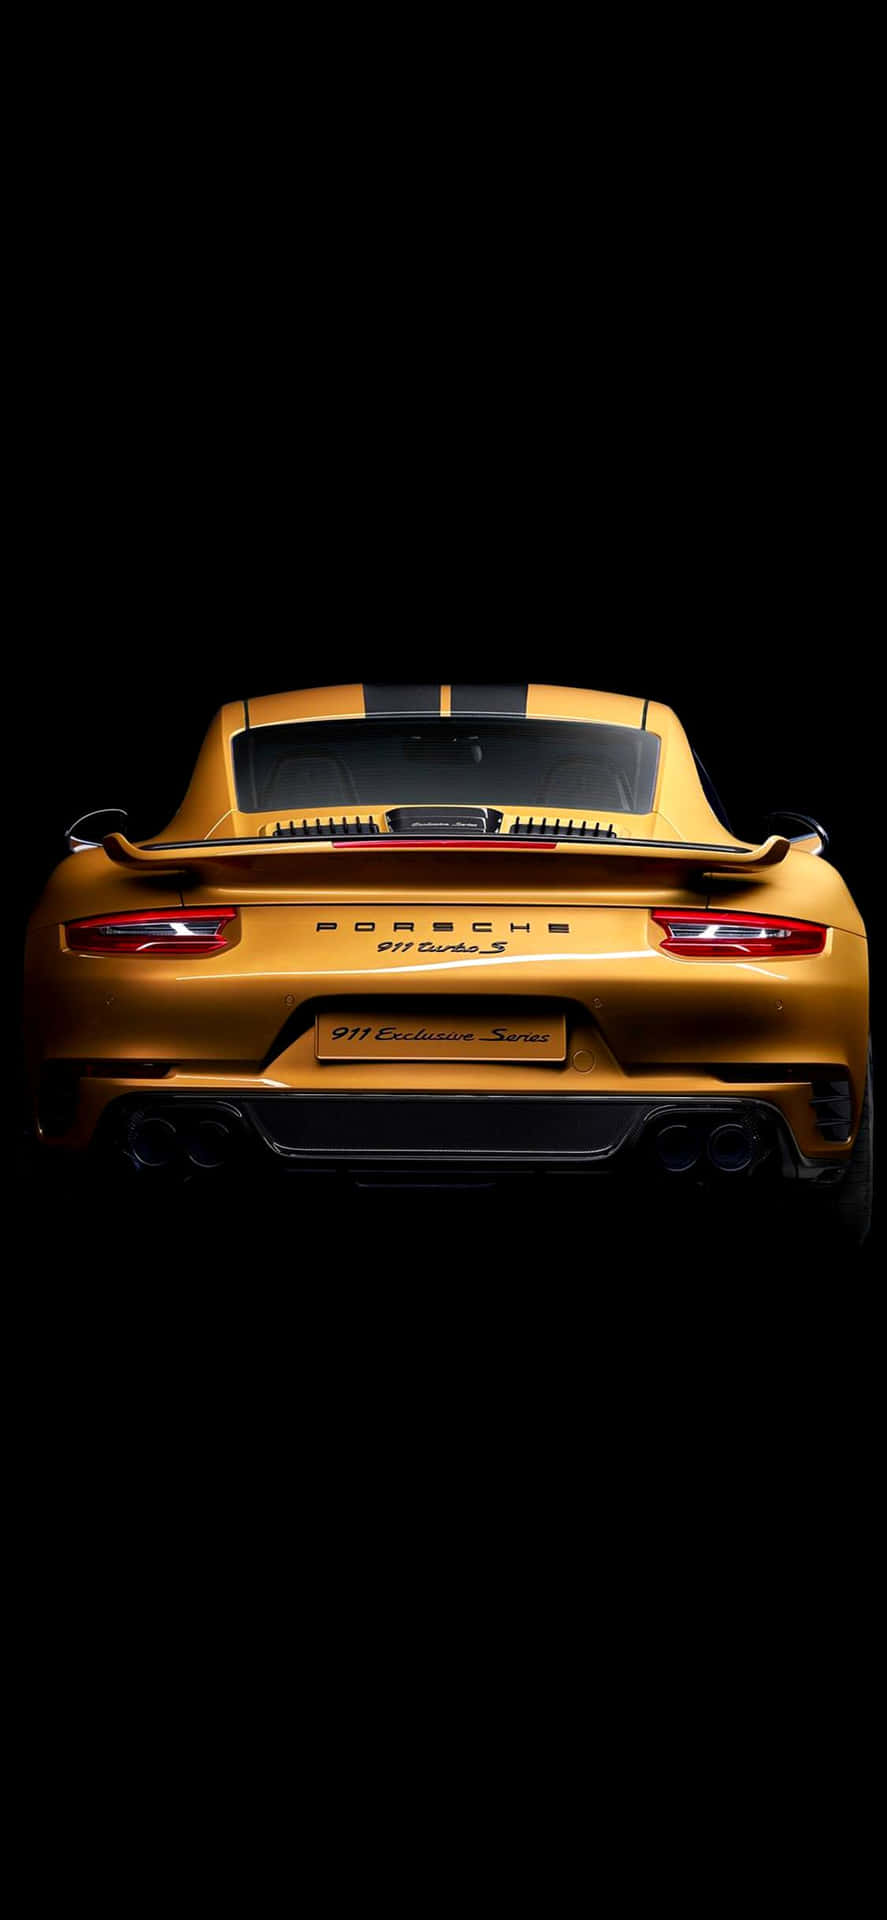 Porscheiphone: Un Impresionante Fondo De Pantalla Para Iphone Que Muestra Las Elegantes Curvas De Un Elegante Superdeportivo Porsche. Fondo de pantalla